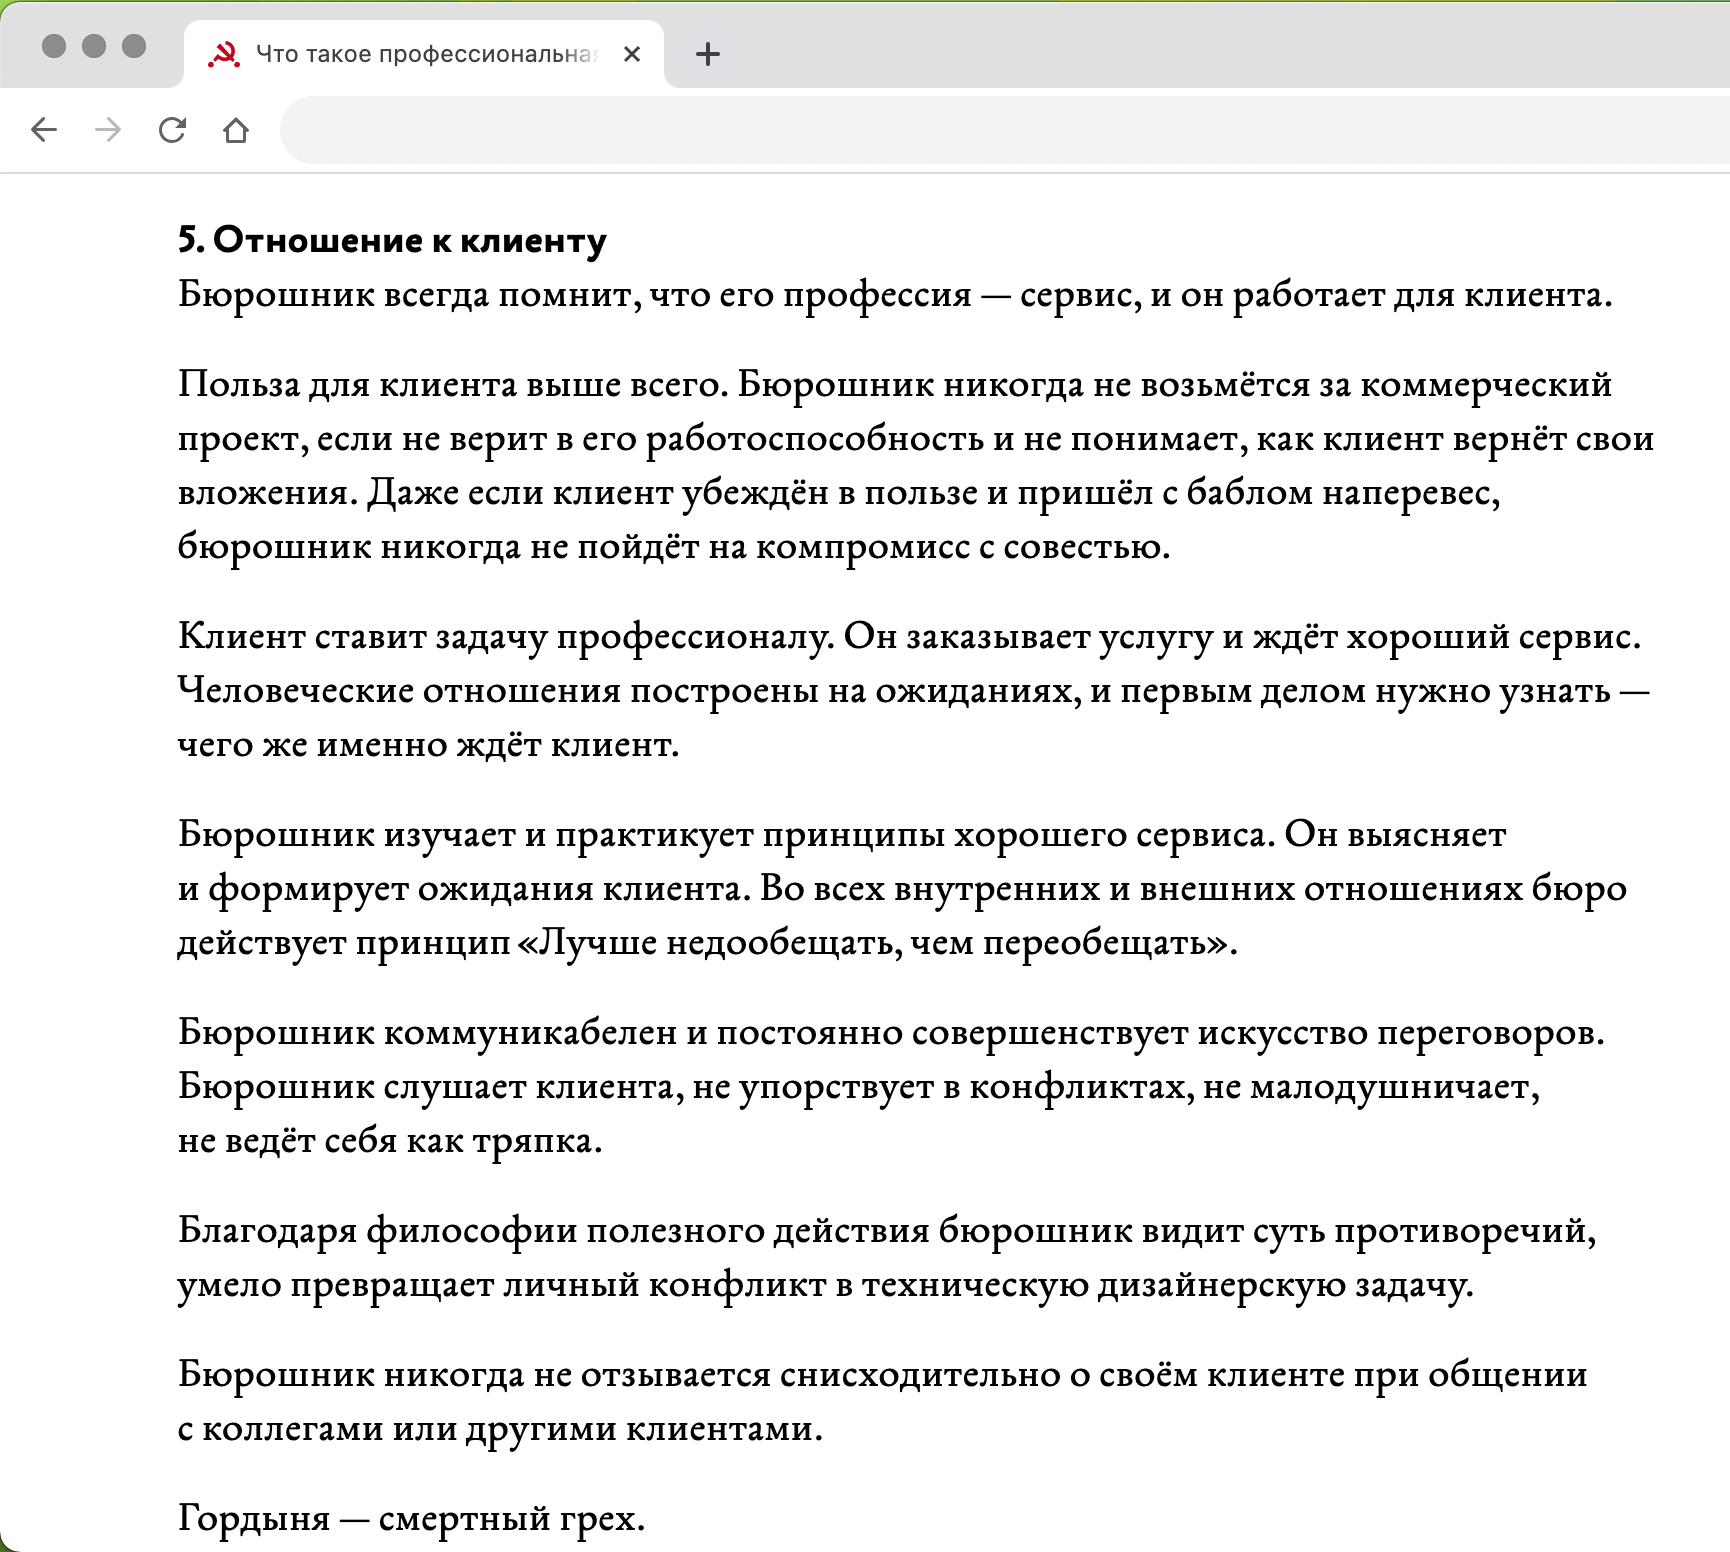 Скриншот Кодекса бюрошника «Дизайн‑бюро Артема Горбунова»